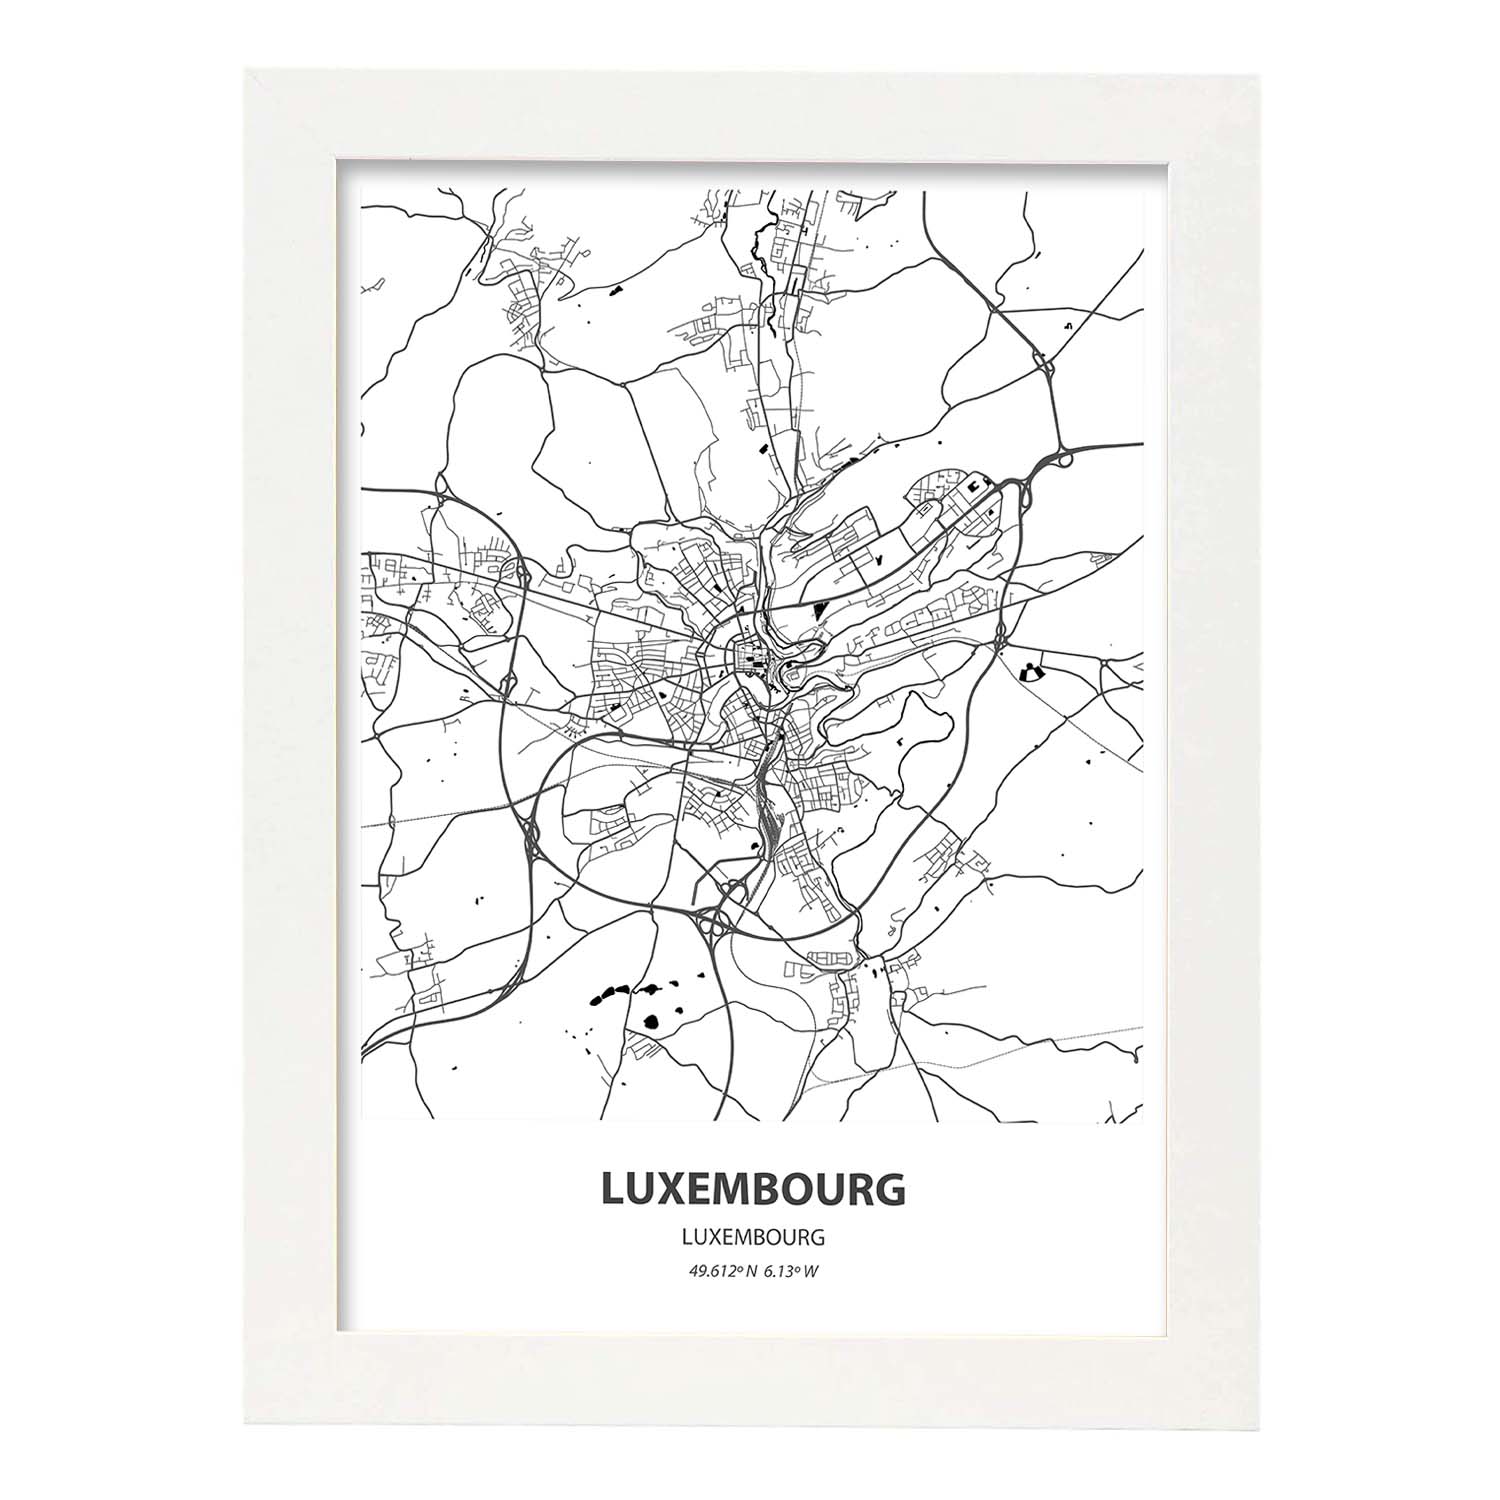 Poster con mapa de Luxemburgo - Luxemburgo. Láminas de ciudades de Europa con mares y ríos en color negro.-Artwork-Nacnic-A4-Marco Blanco-Nacnic Estudio SL